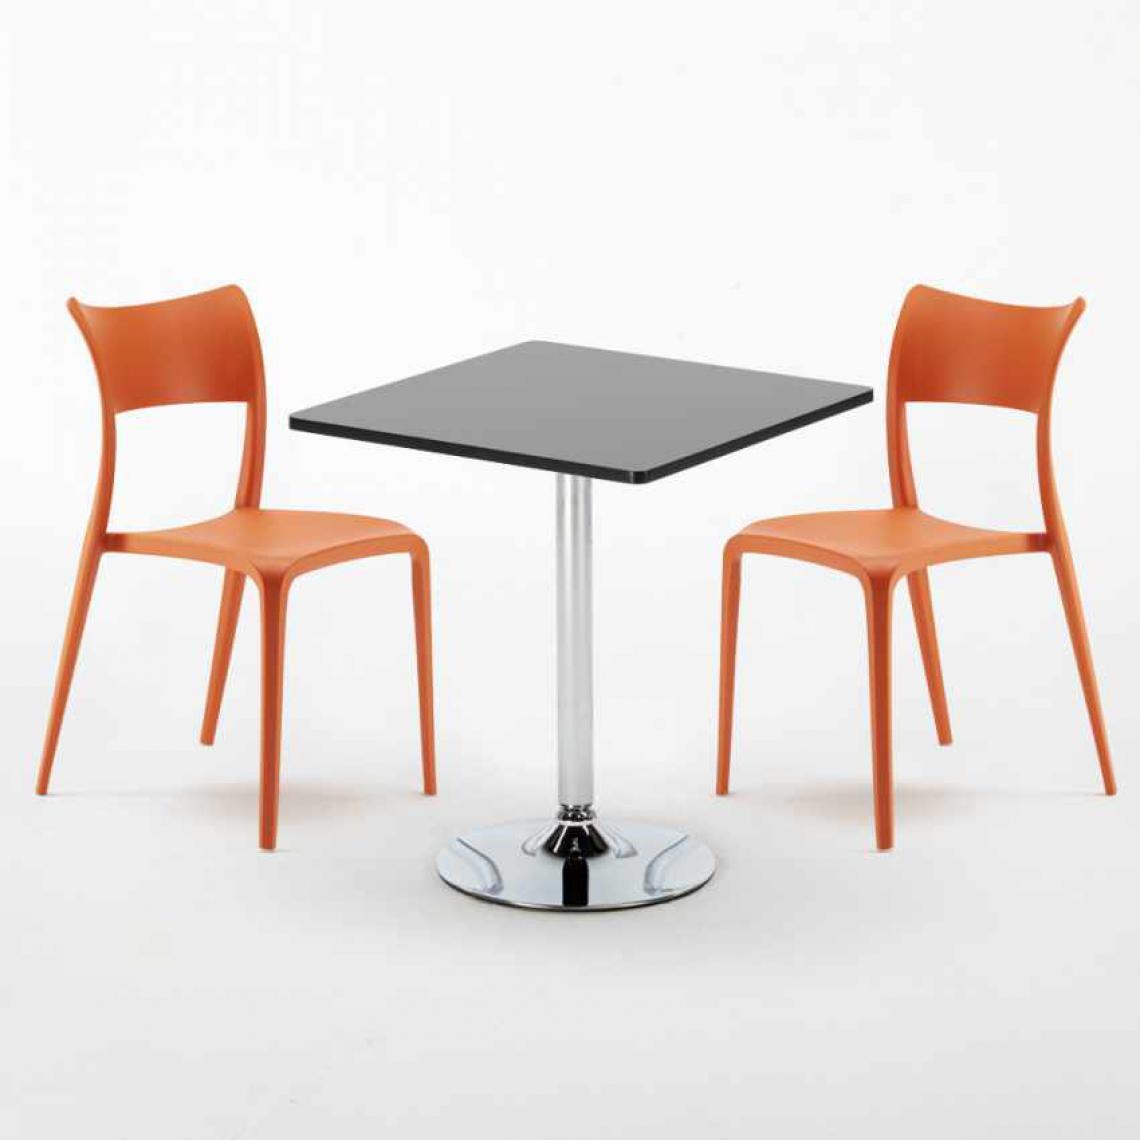 Ahd Amazing Home Design - Table Carrée Noire 70x70cm Avec 2 Chaises Colorées Set Intérieur Bar Café Parisienne Mojito, Couleur: Orange - Tables à manger